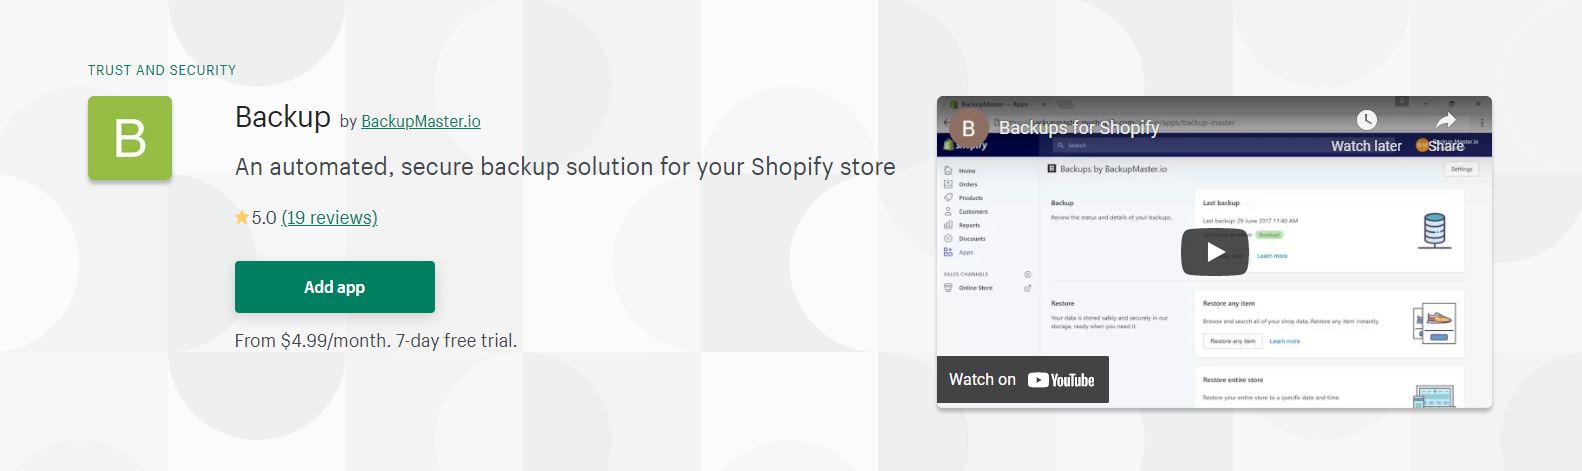 Shopify backup app